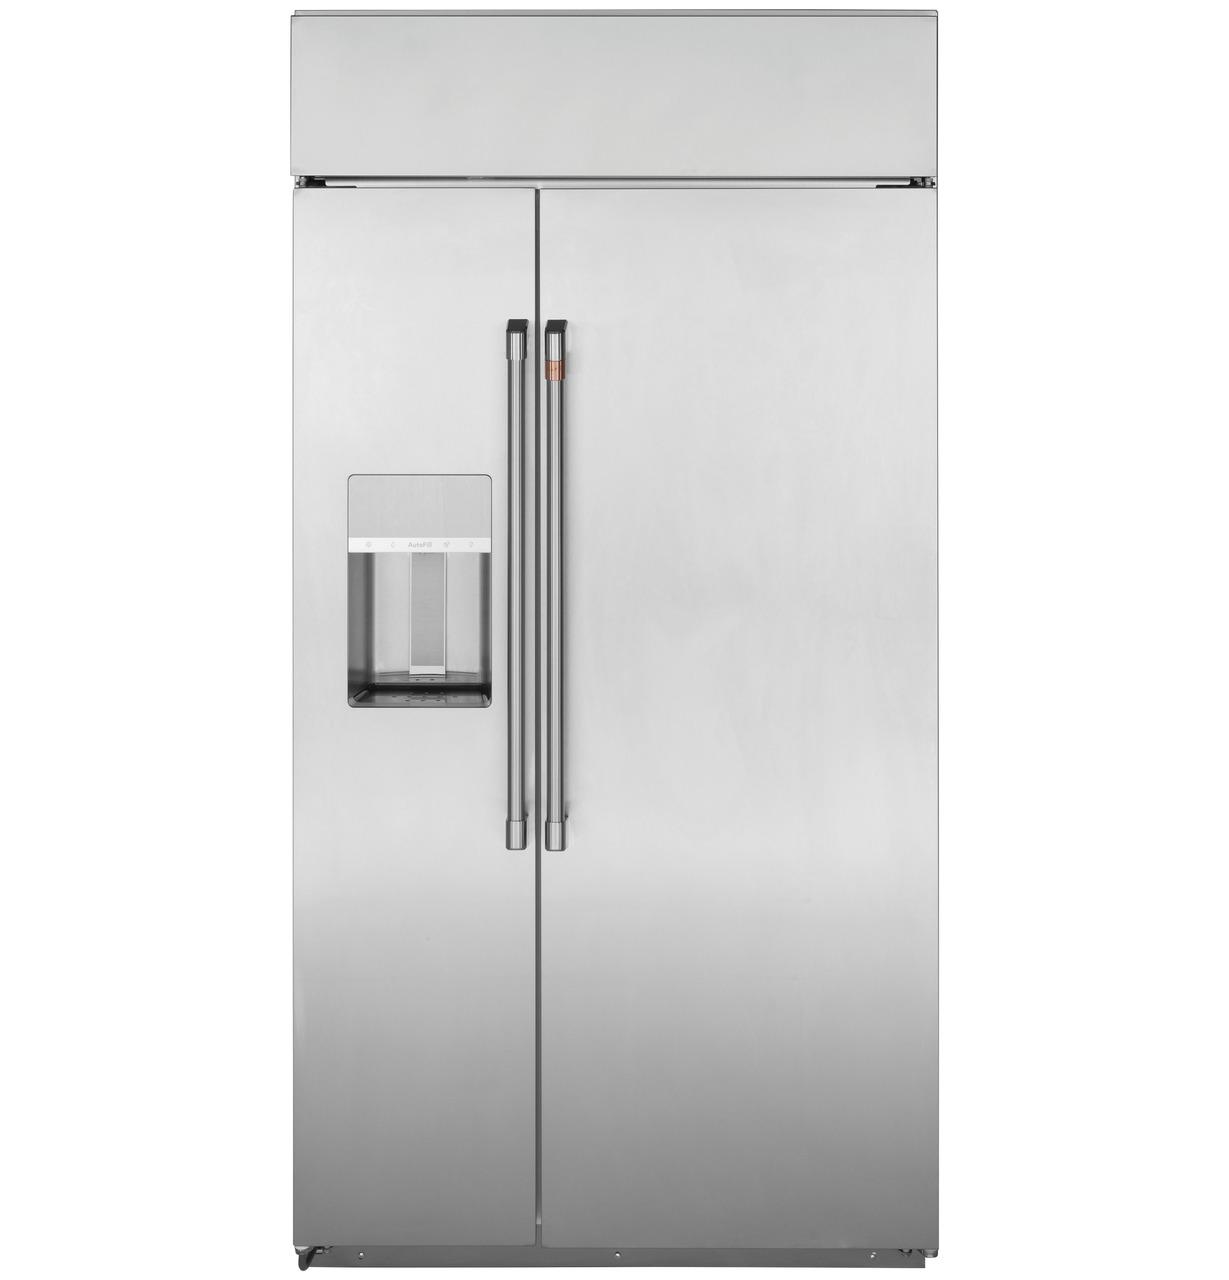 Cafe Caf(eback)™ 48" Smart Built-In Side-by-Side Refrigerator with Dispenser